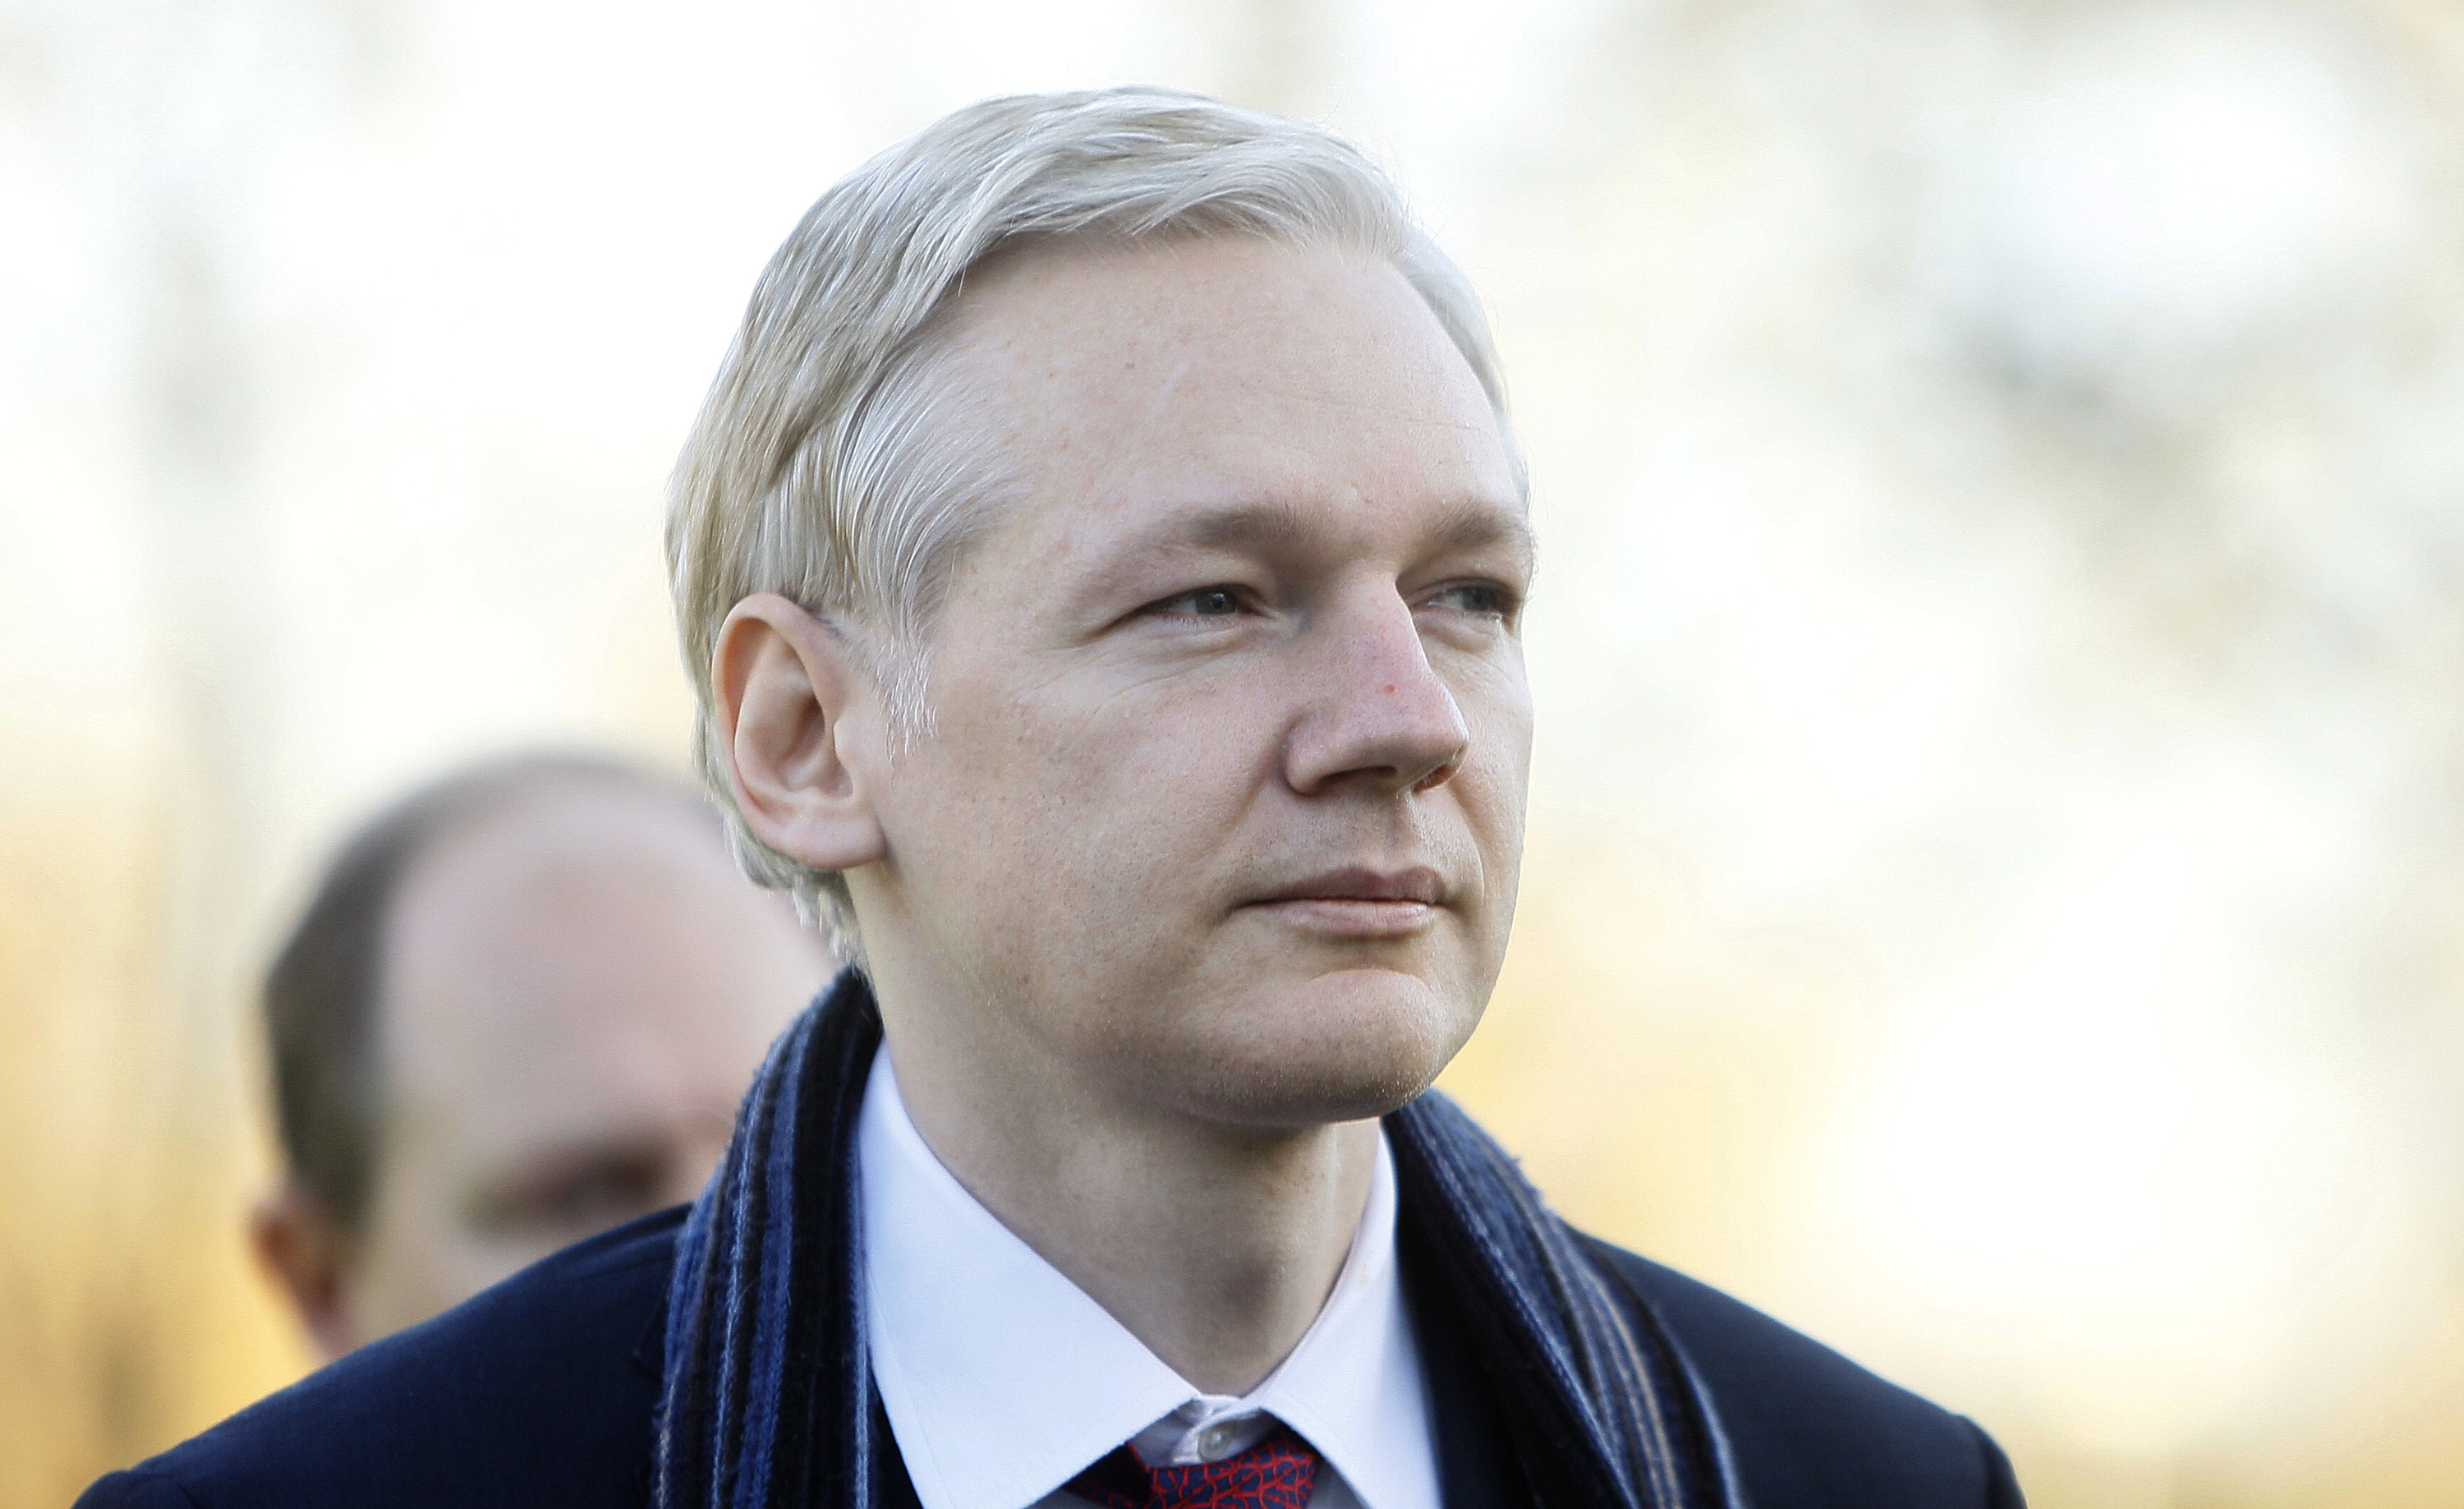 Julian Assange förde en stenhård kamp för att slippa utlämning till Sverige där han tvingas möta sexbrottsanklagelser.